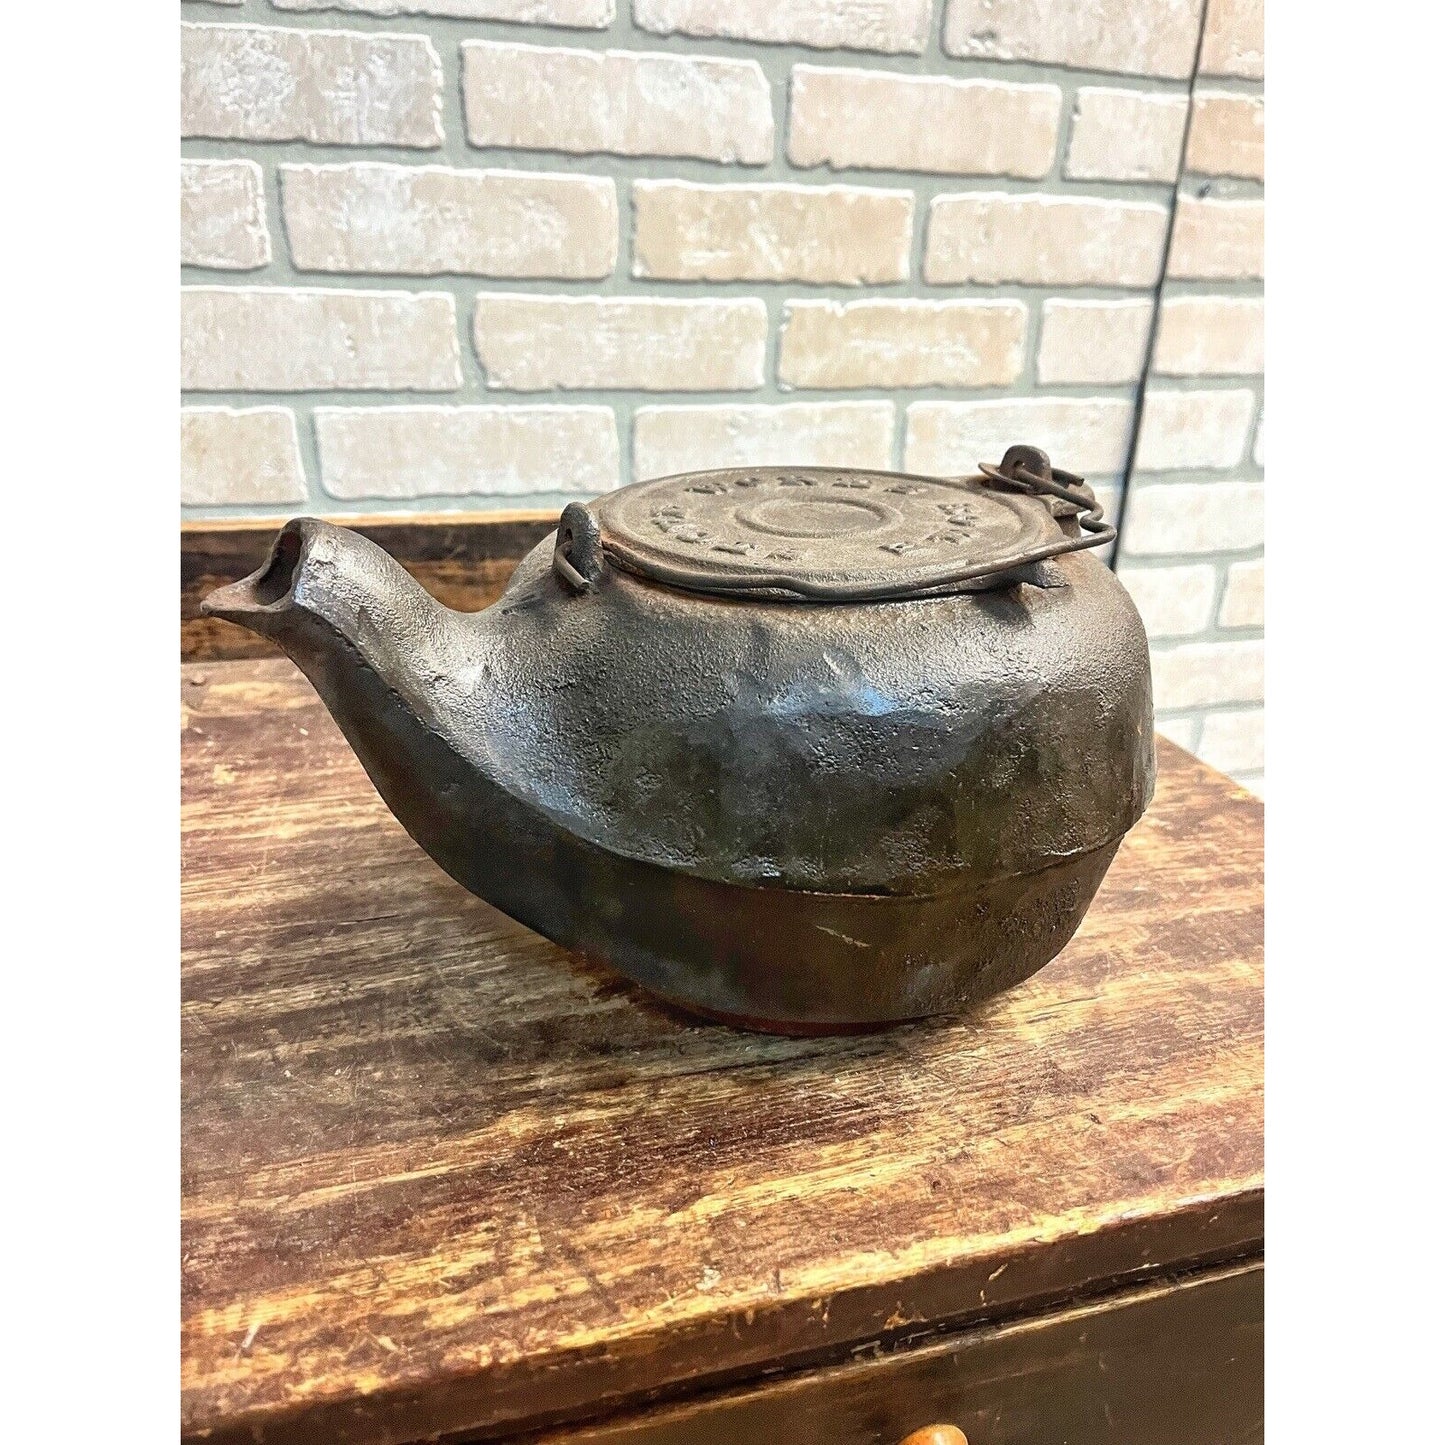 Antique 1900s Rome Stove Works Cast Iron Kettle Tea Pot #7 Cookware for Range